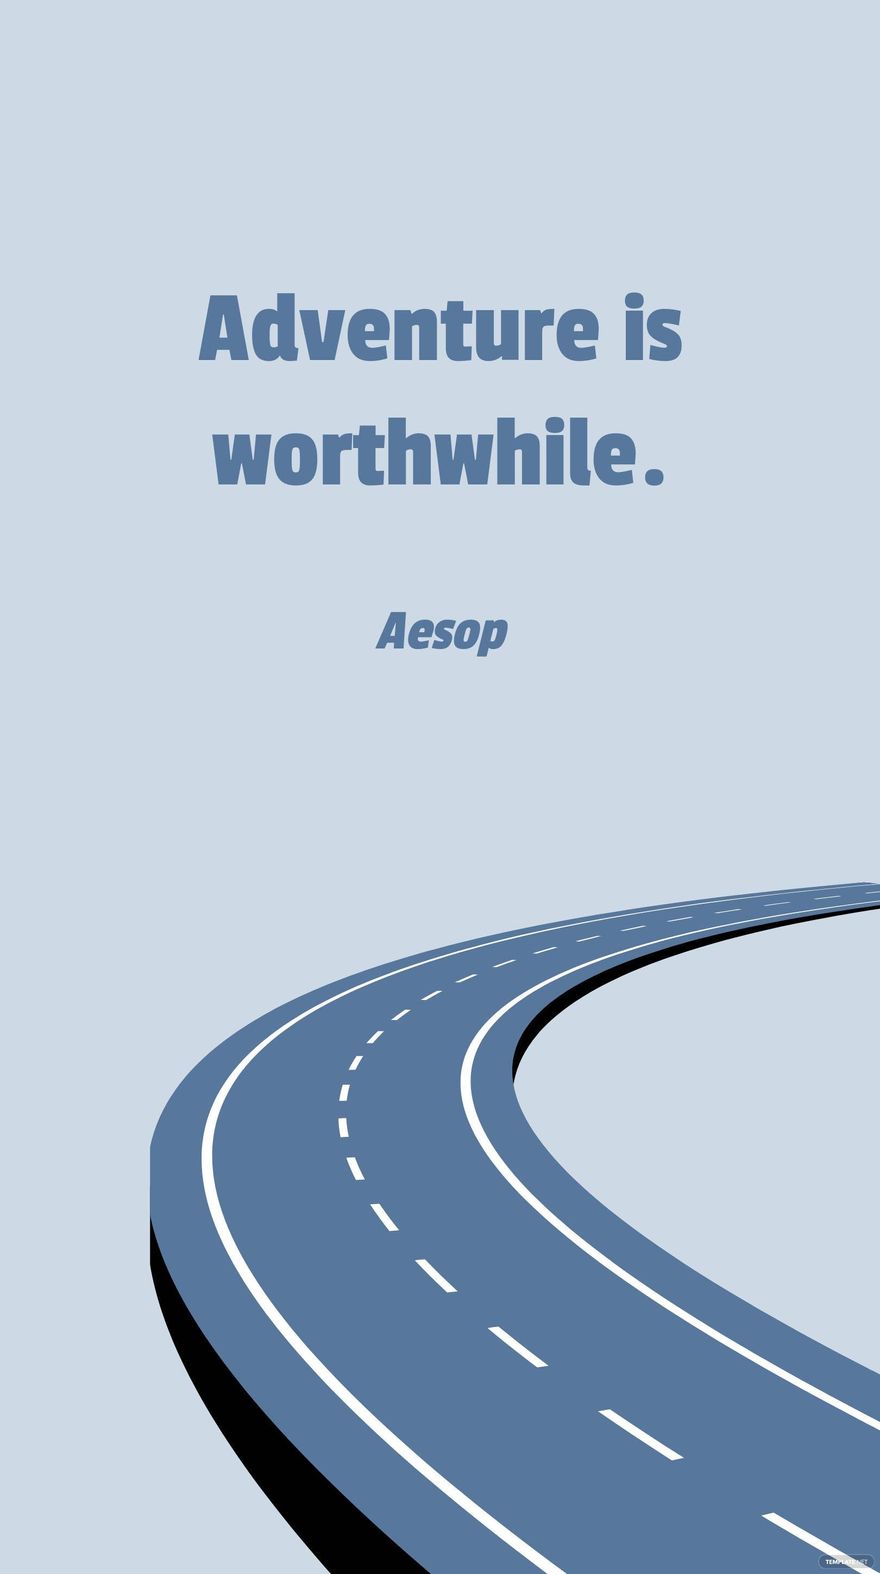 Aesop - Adventure is worthwhile. in JPG